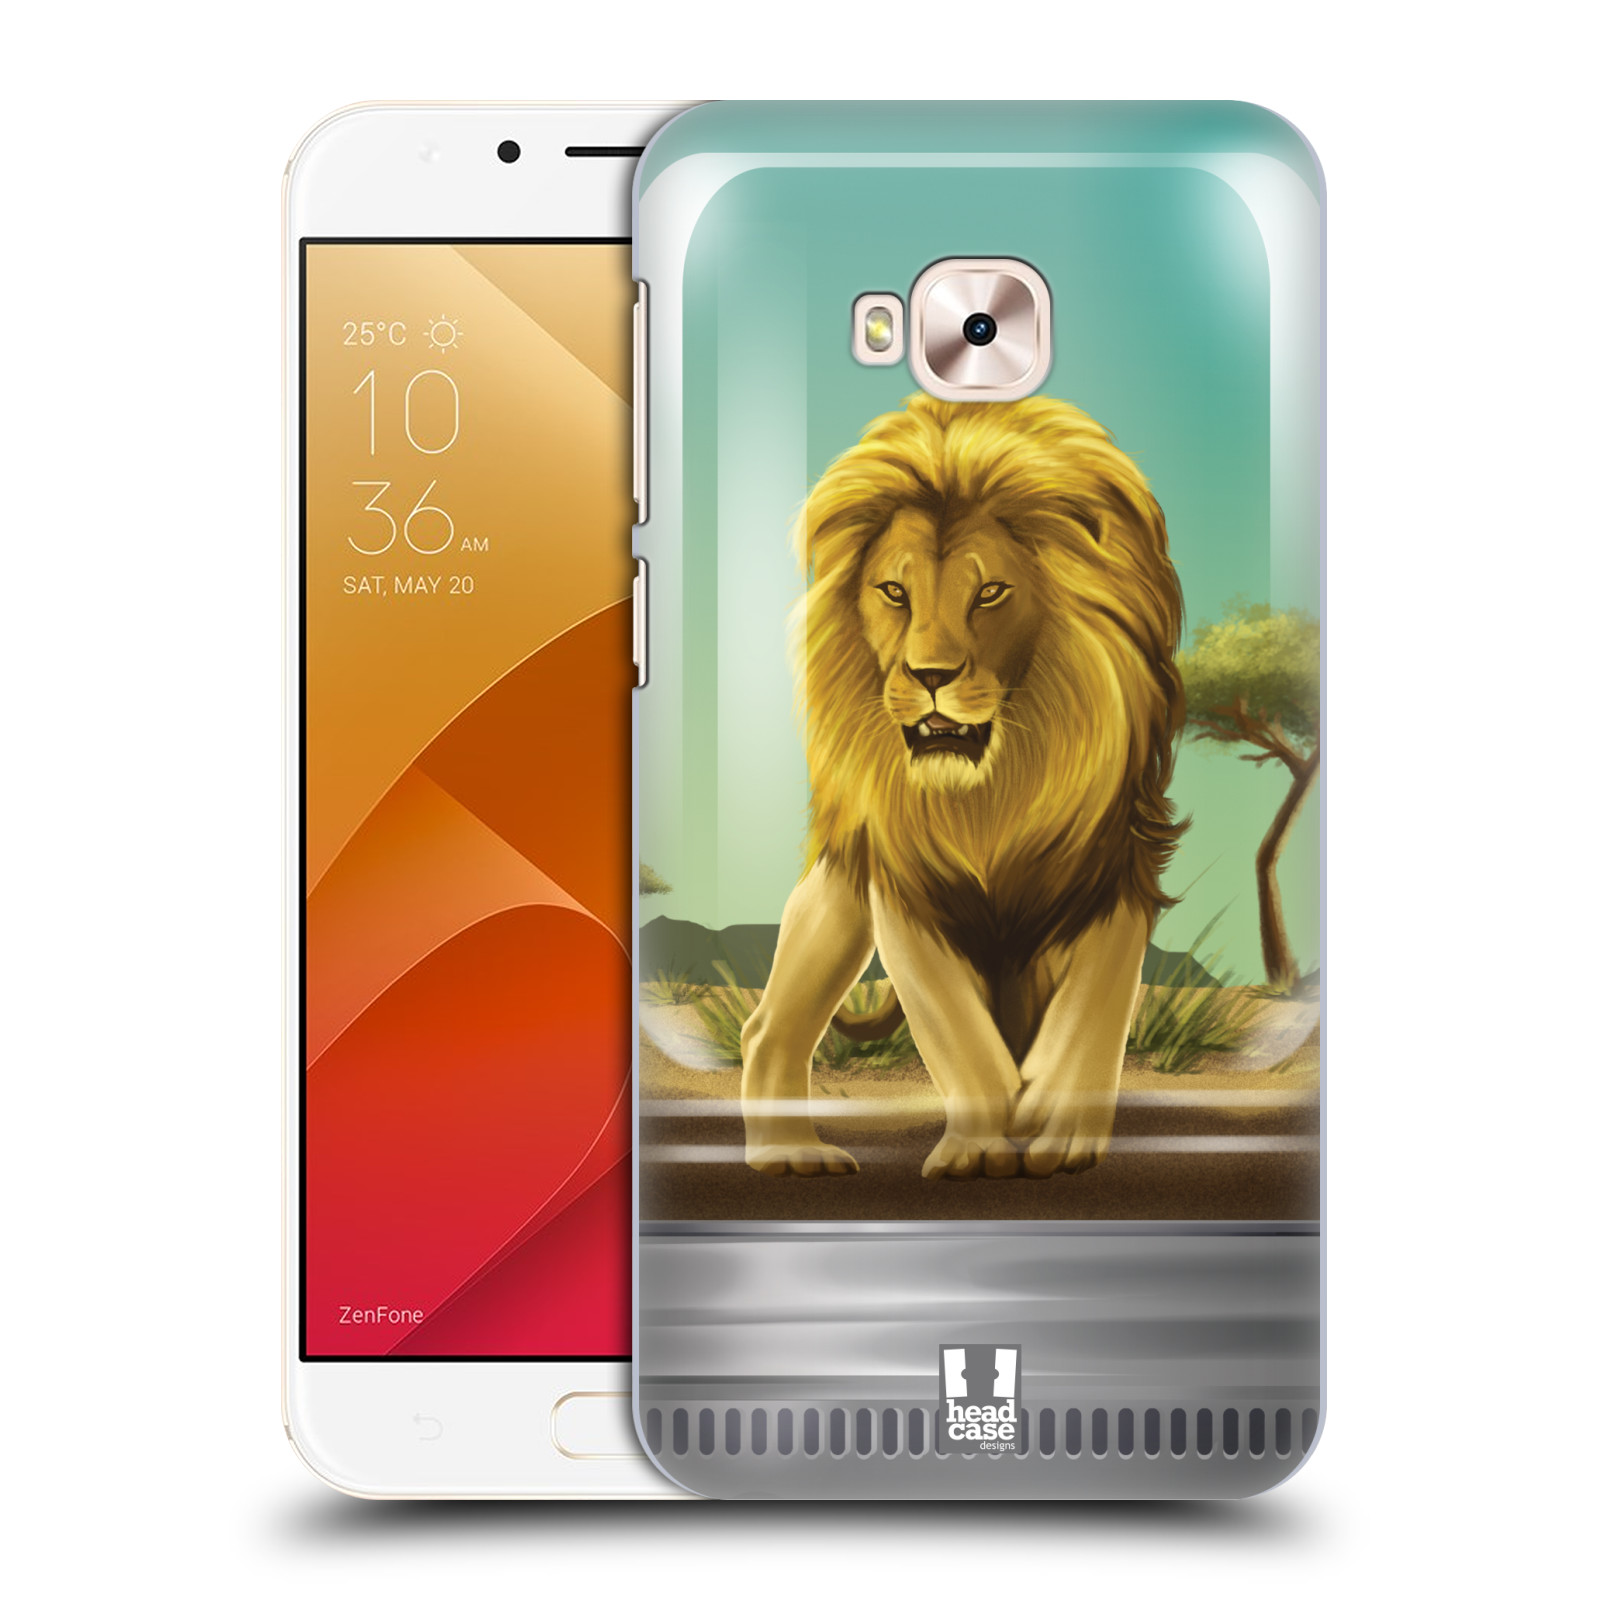 HEAD CASE plastový obal na mobil Asus Zenfone 4 Selfie Pro ZD552KL vzor Zvířátka v těžítku lev